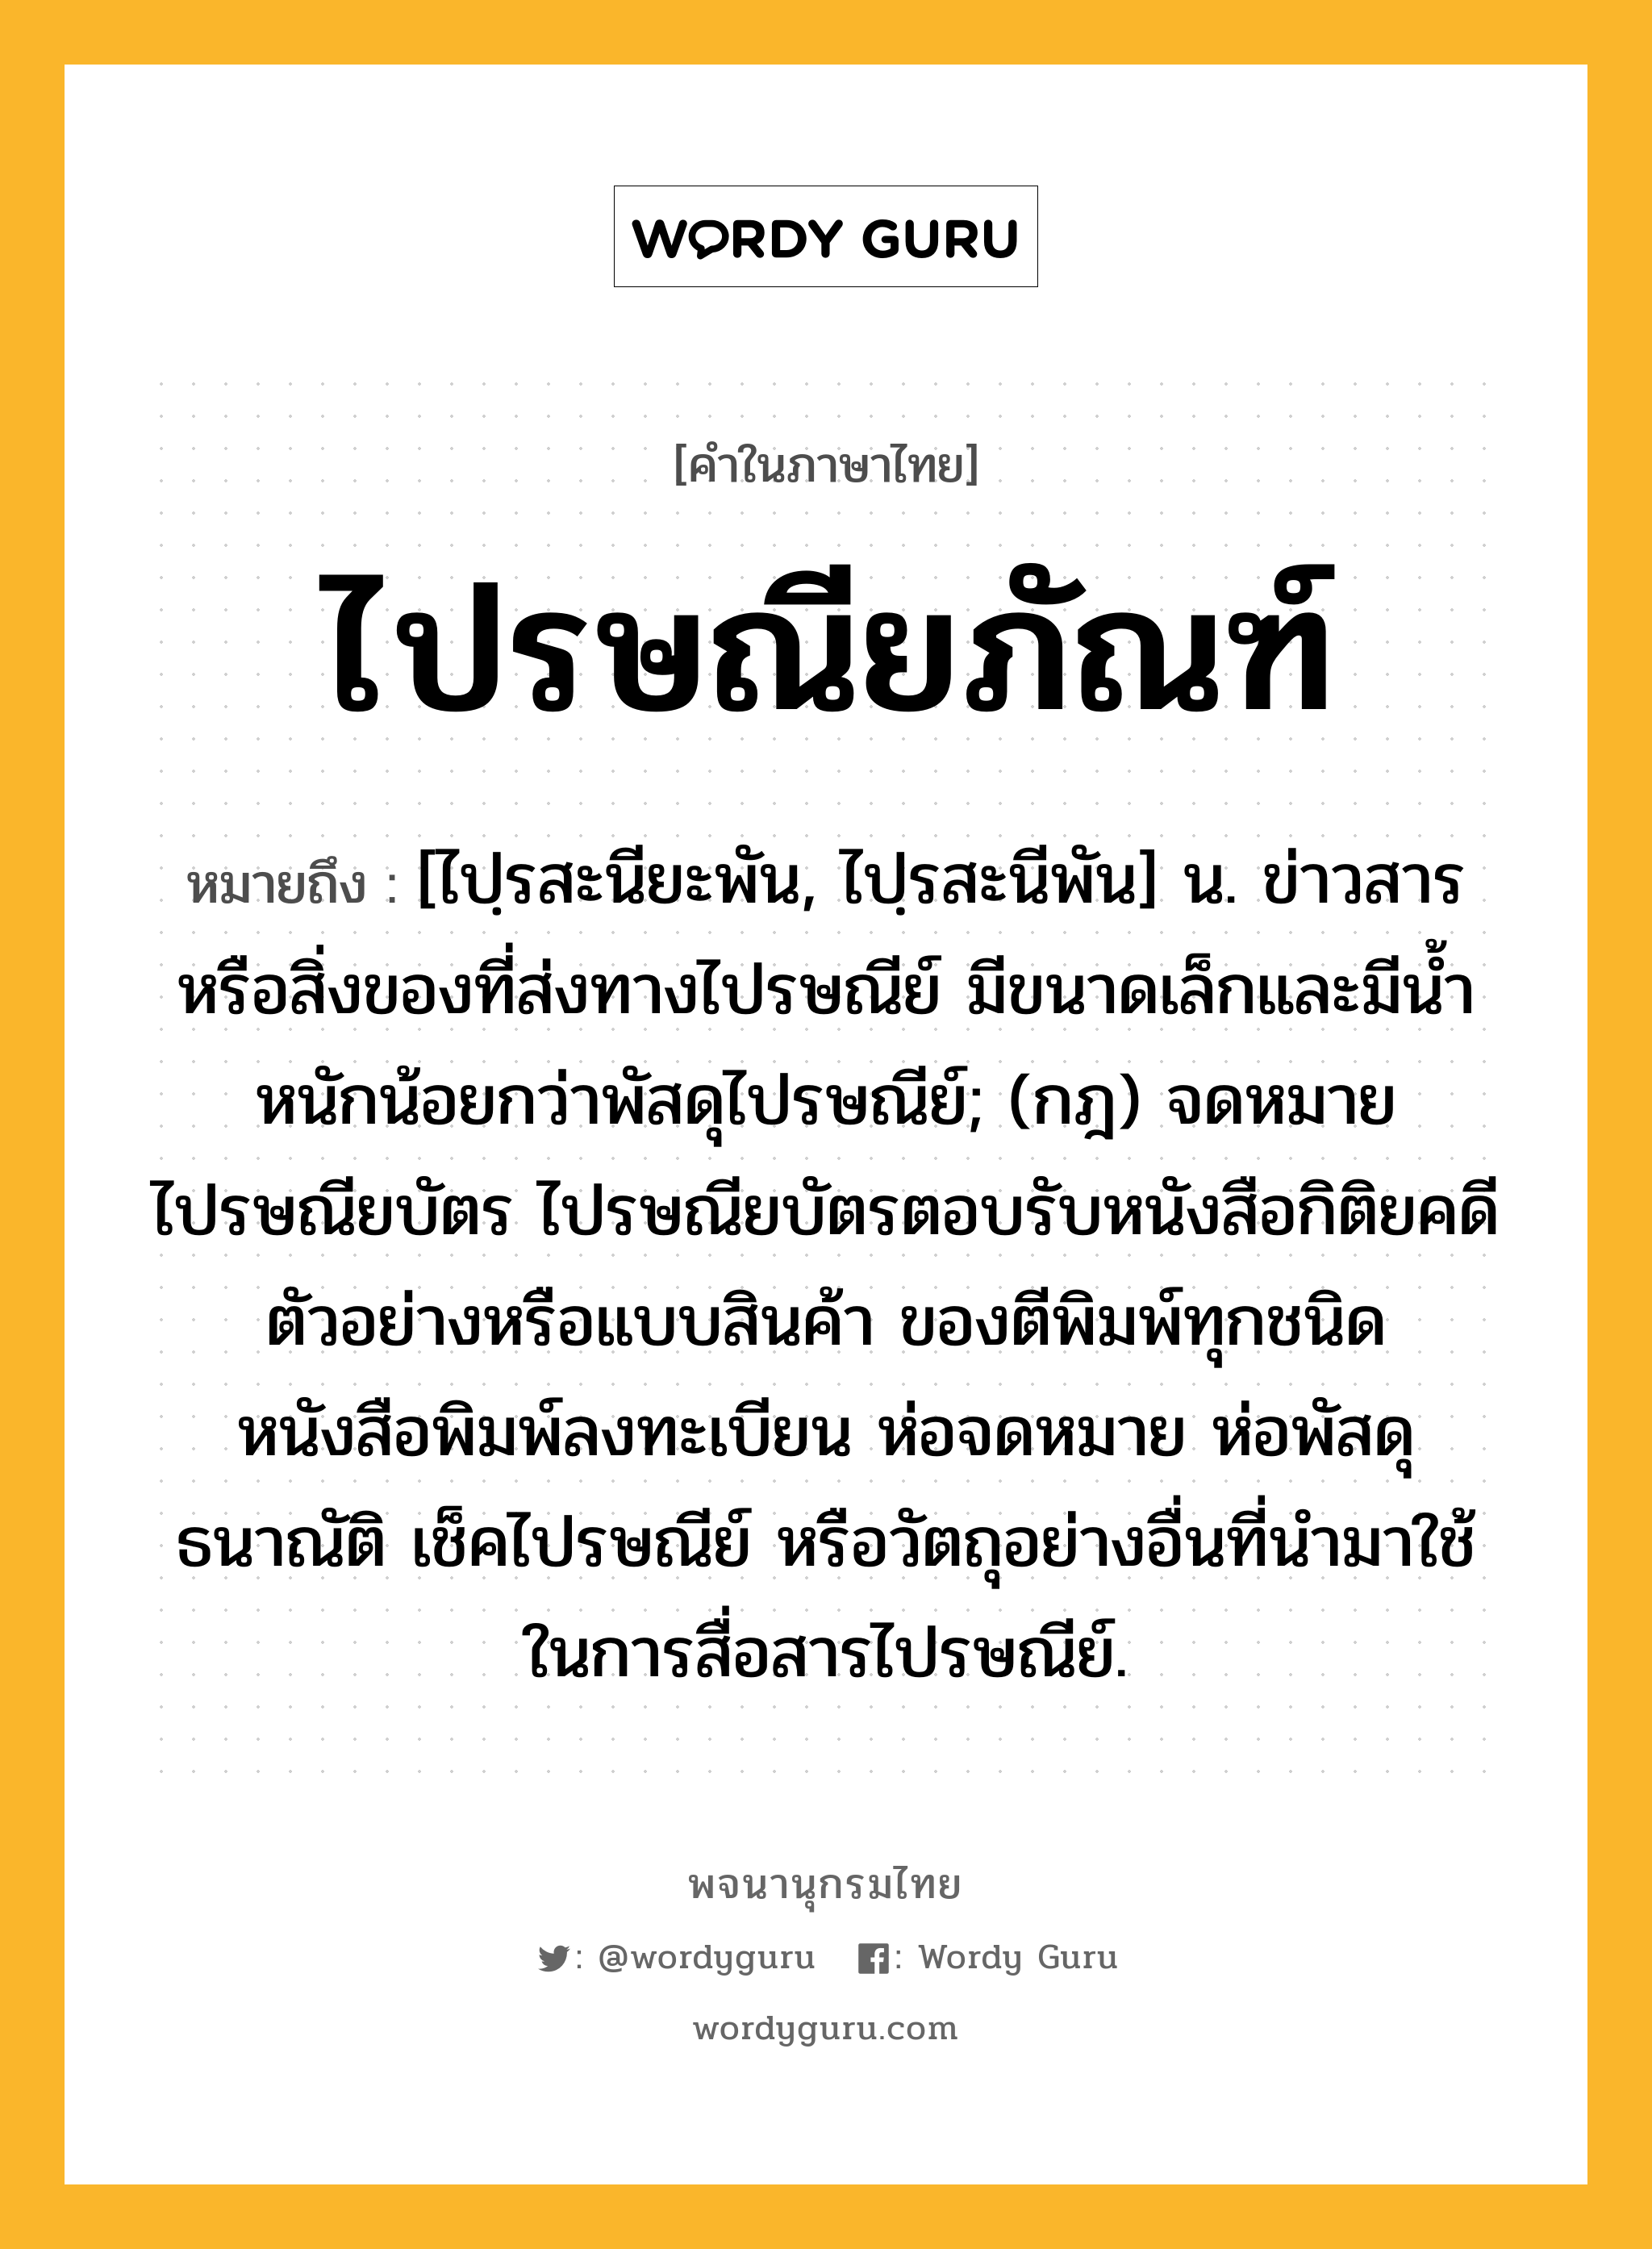 ไปรษณียภัณฑ์ ความหมาย หมายถึงอะไร?, คำในภาษาไทย ไปรษณียภัณฑ์ หมายถึง [ไปฺรสะนียะพัน, ไปฺรสะนีพัน] น. ข่าวสารหรือสิ่งของที่ส่งทางไปรษณีย์ มีขนาดเล็กและมีนํ้าหนักน้อยกว่าพัสดุไปรษณีย์; (กฎ) จดหมาย ไปรษณียบัตร ไปรษณียบัตรตอบรับหนังสือกิติยคดี ตัวอย่างหรือแบบสินค้า ของตีพิมพ์ทุกชนิด หนังสือพิมพ์ลงทะเบียน ห่อจดหมาย ห่อพัสดุ ธนาณัติ เช็คไปรษณีย์ หรือวัตถุอย่างอื่นที่นํามาใช้ในการสื่อสารไปรษณีย์.